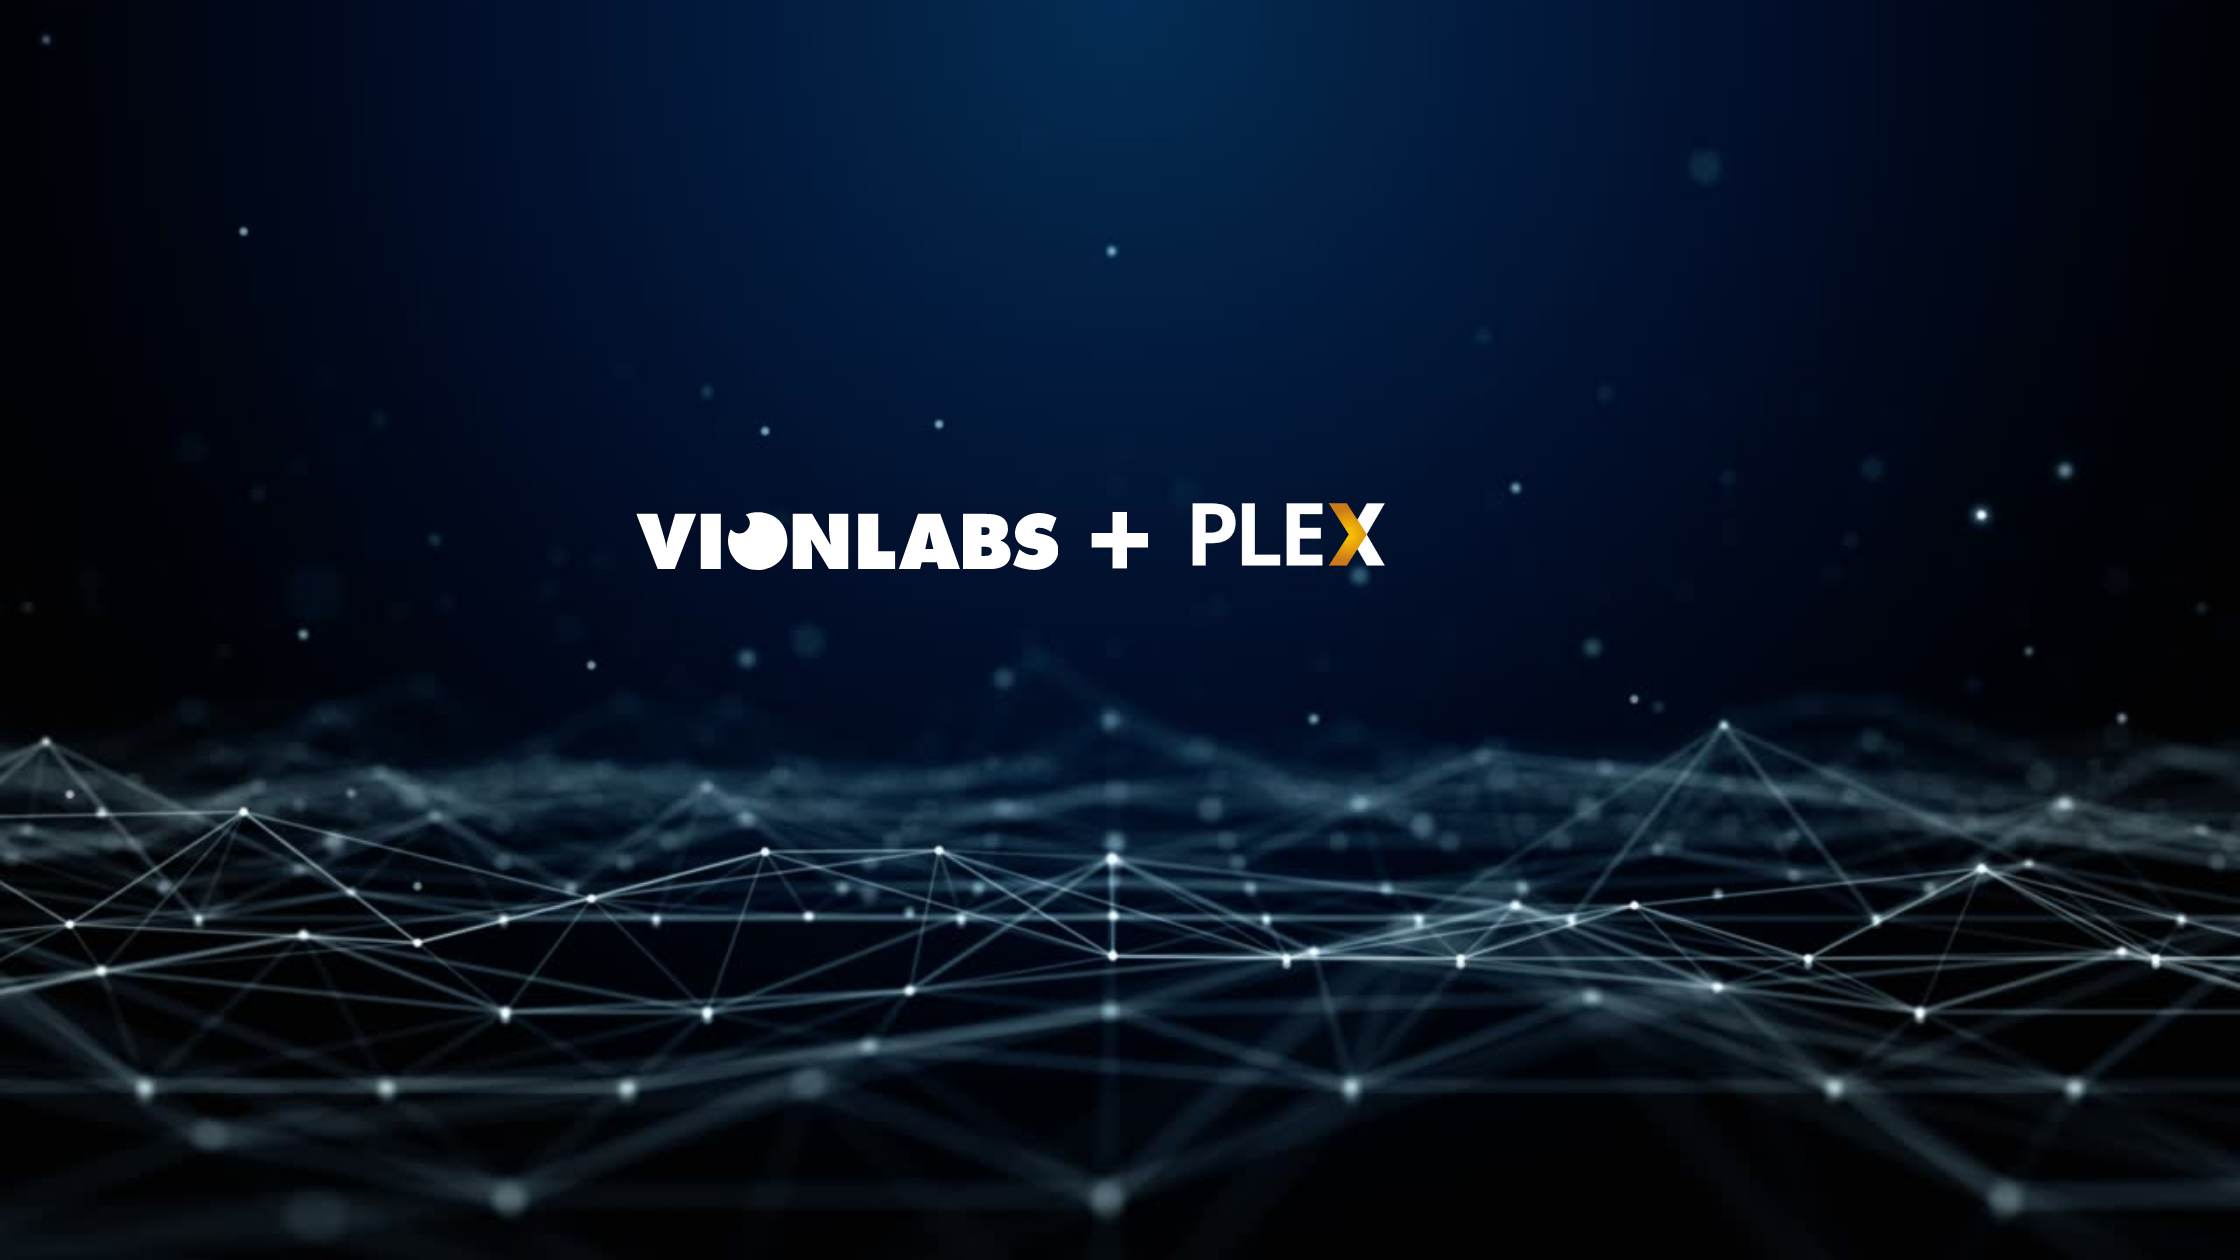 vionlabs and plex